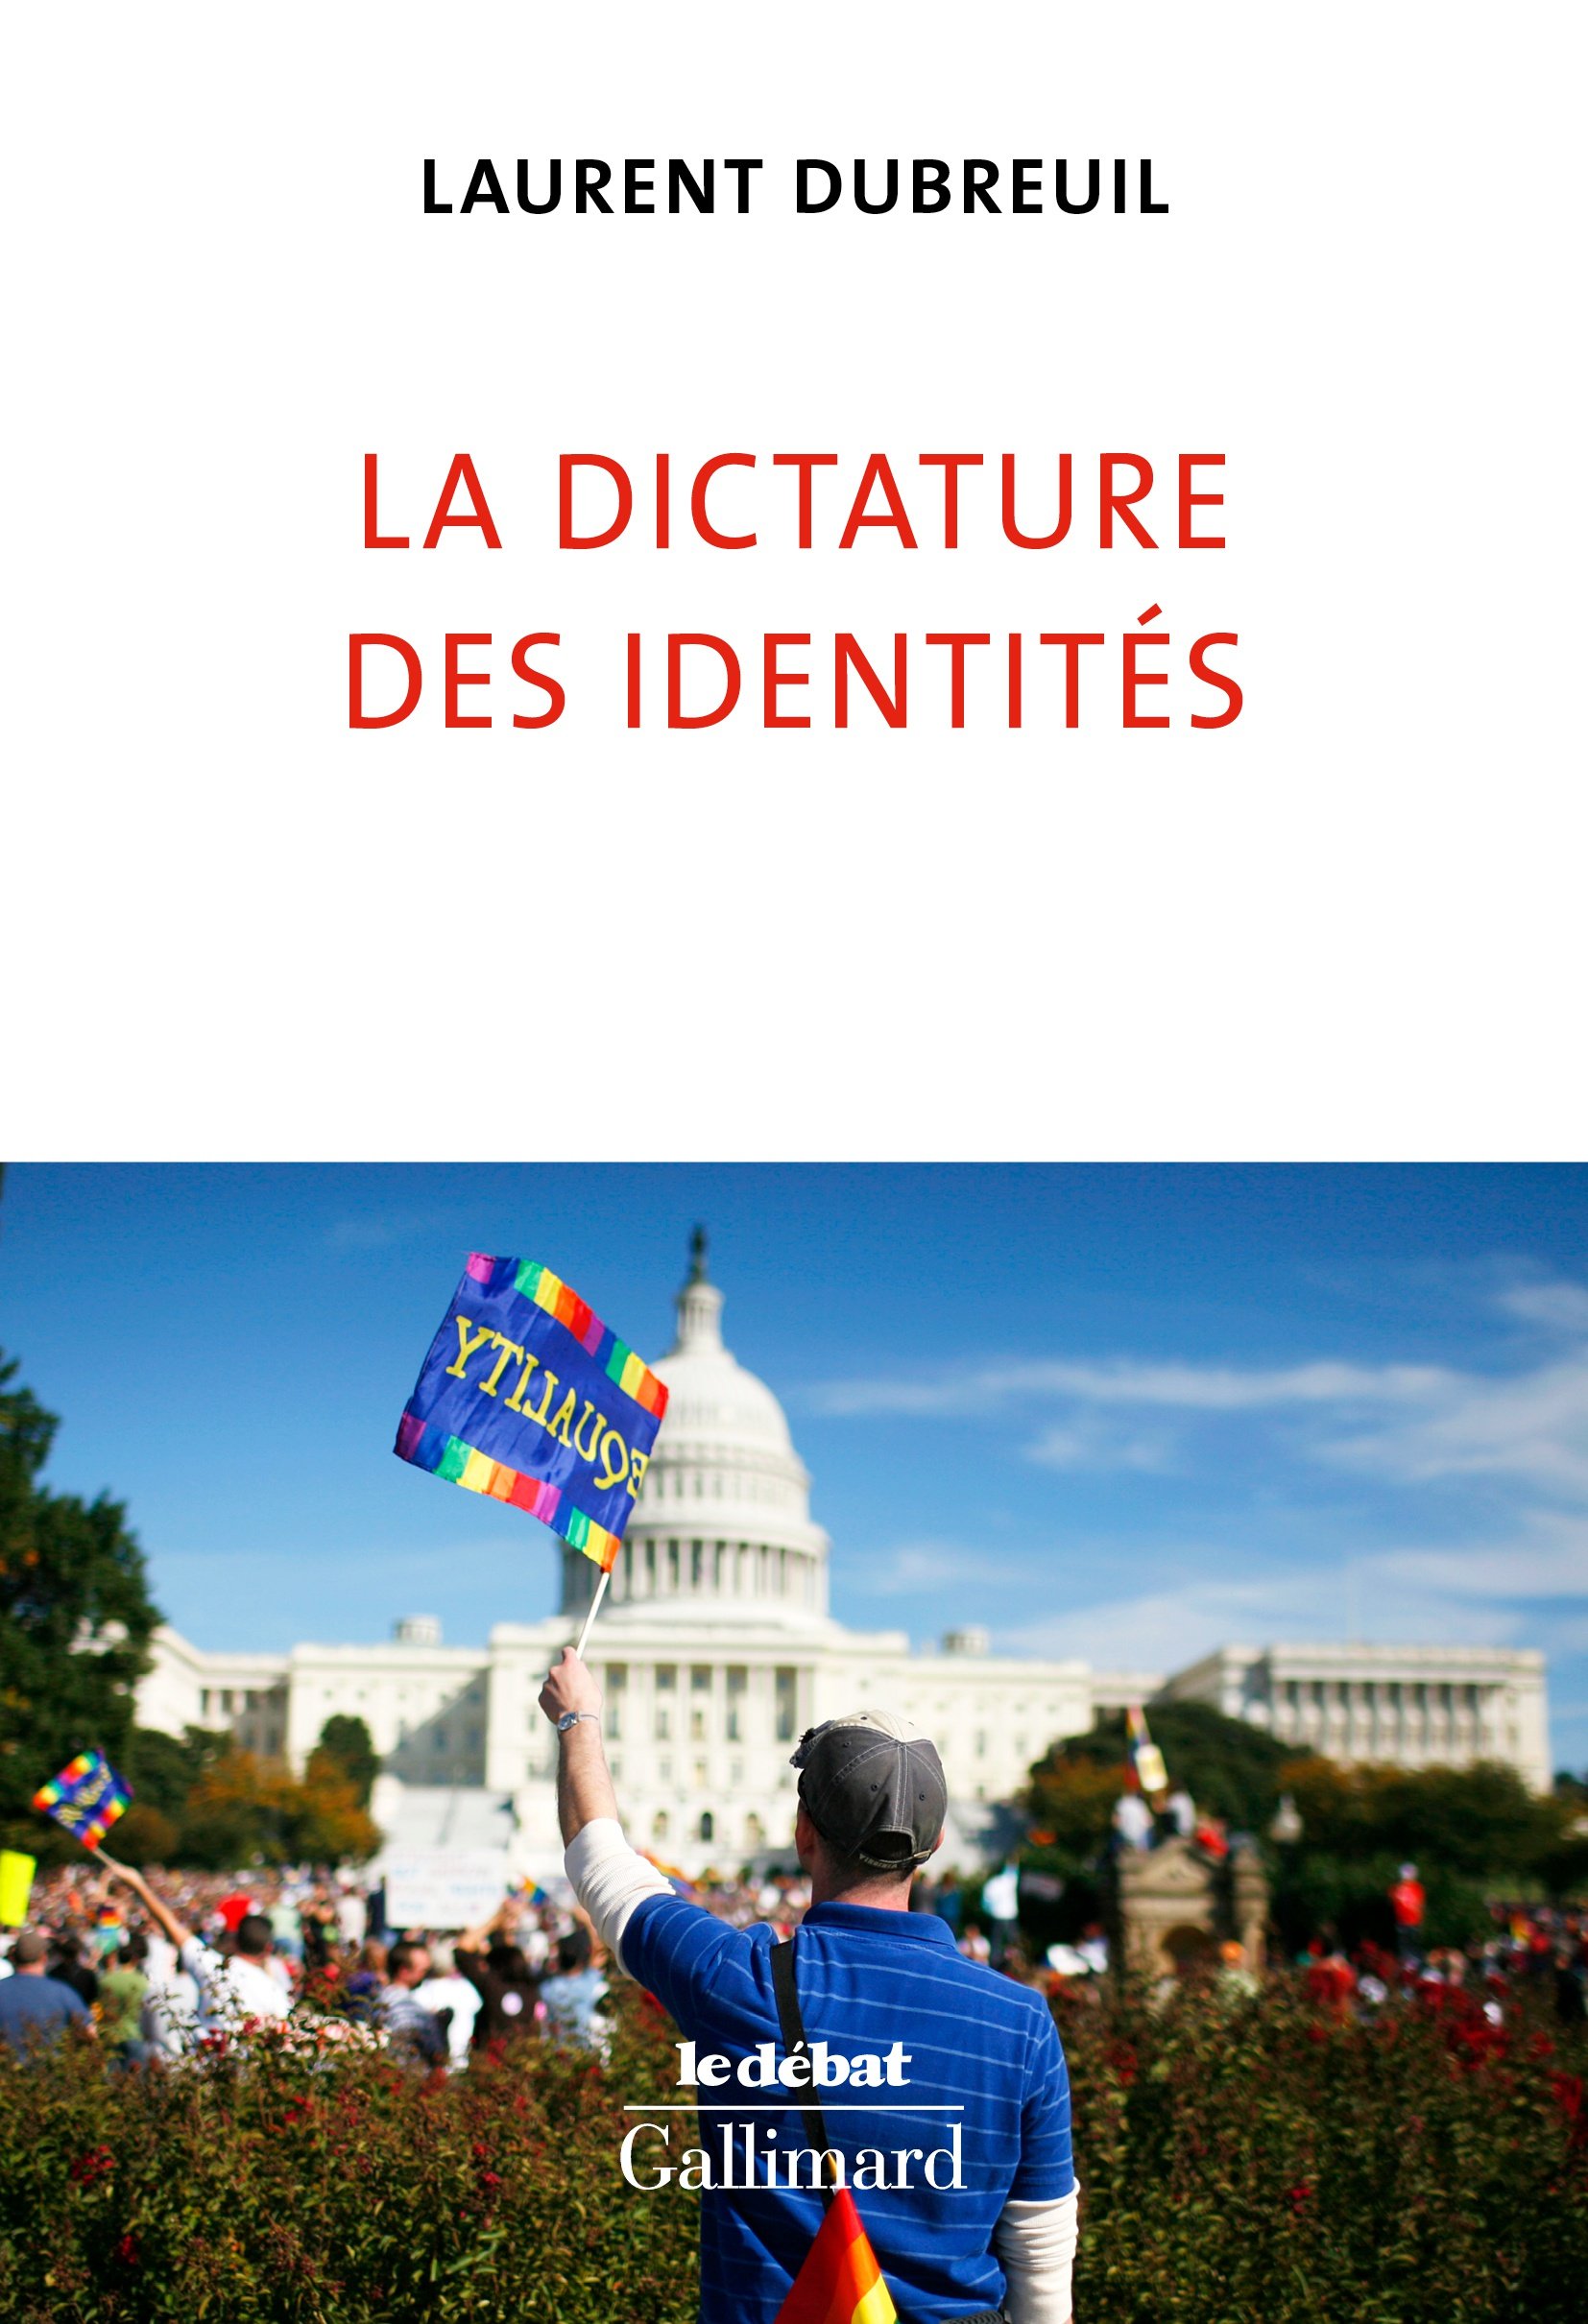 Laurent Dubreuil – La dictature des identités